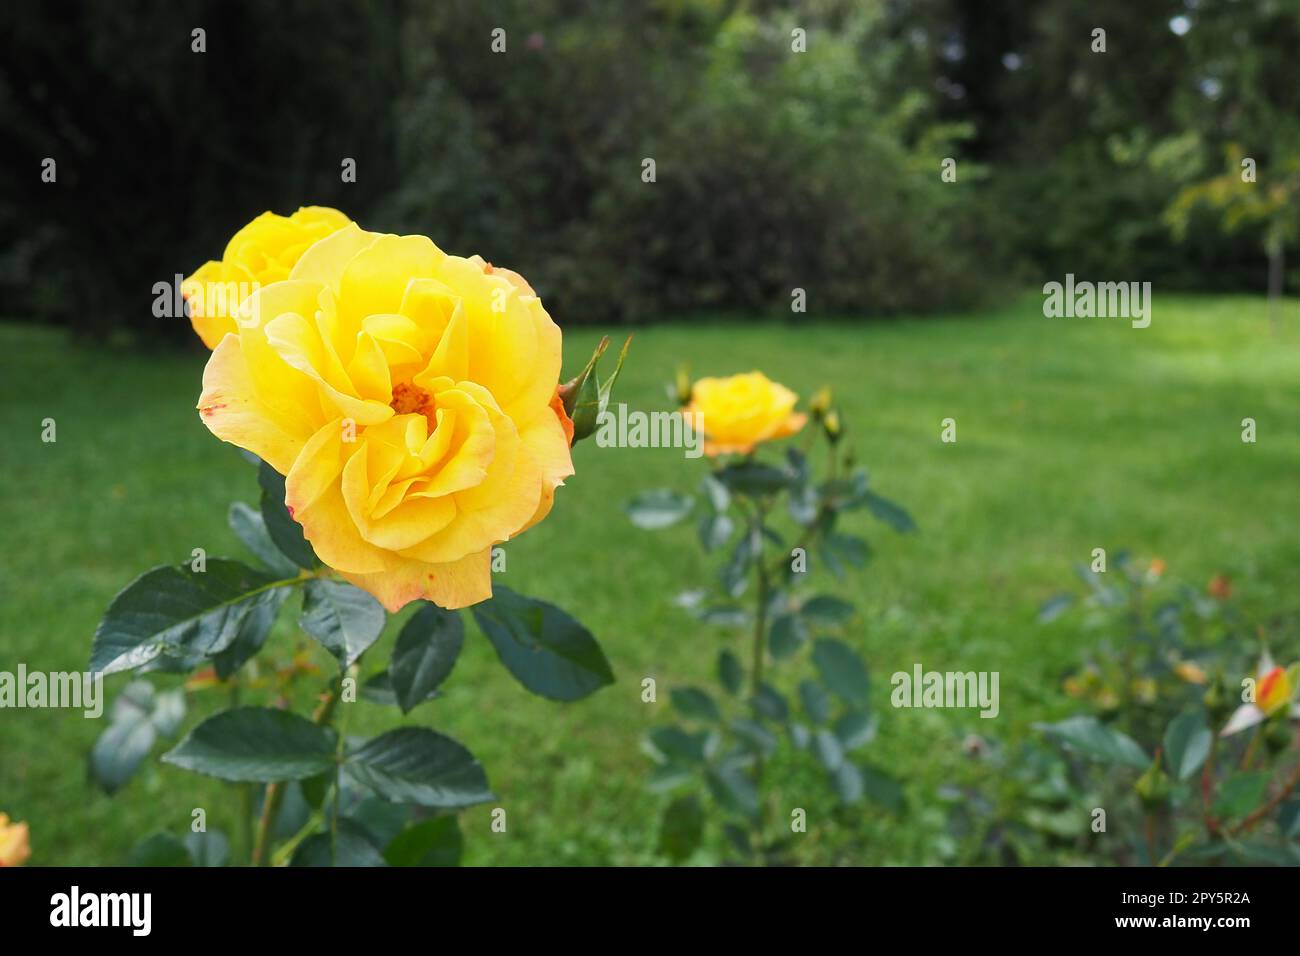 Gelbe Rosen im Garten oder Park. Banja Koviljaca, Serbien. Ein Busch gelber Hybrid-Teerösen als Dekoration im Landschaftsdesign. Blumenzucht und Gartenarbeit als Hobby. Stockfoto